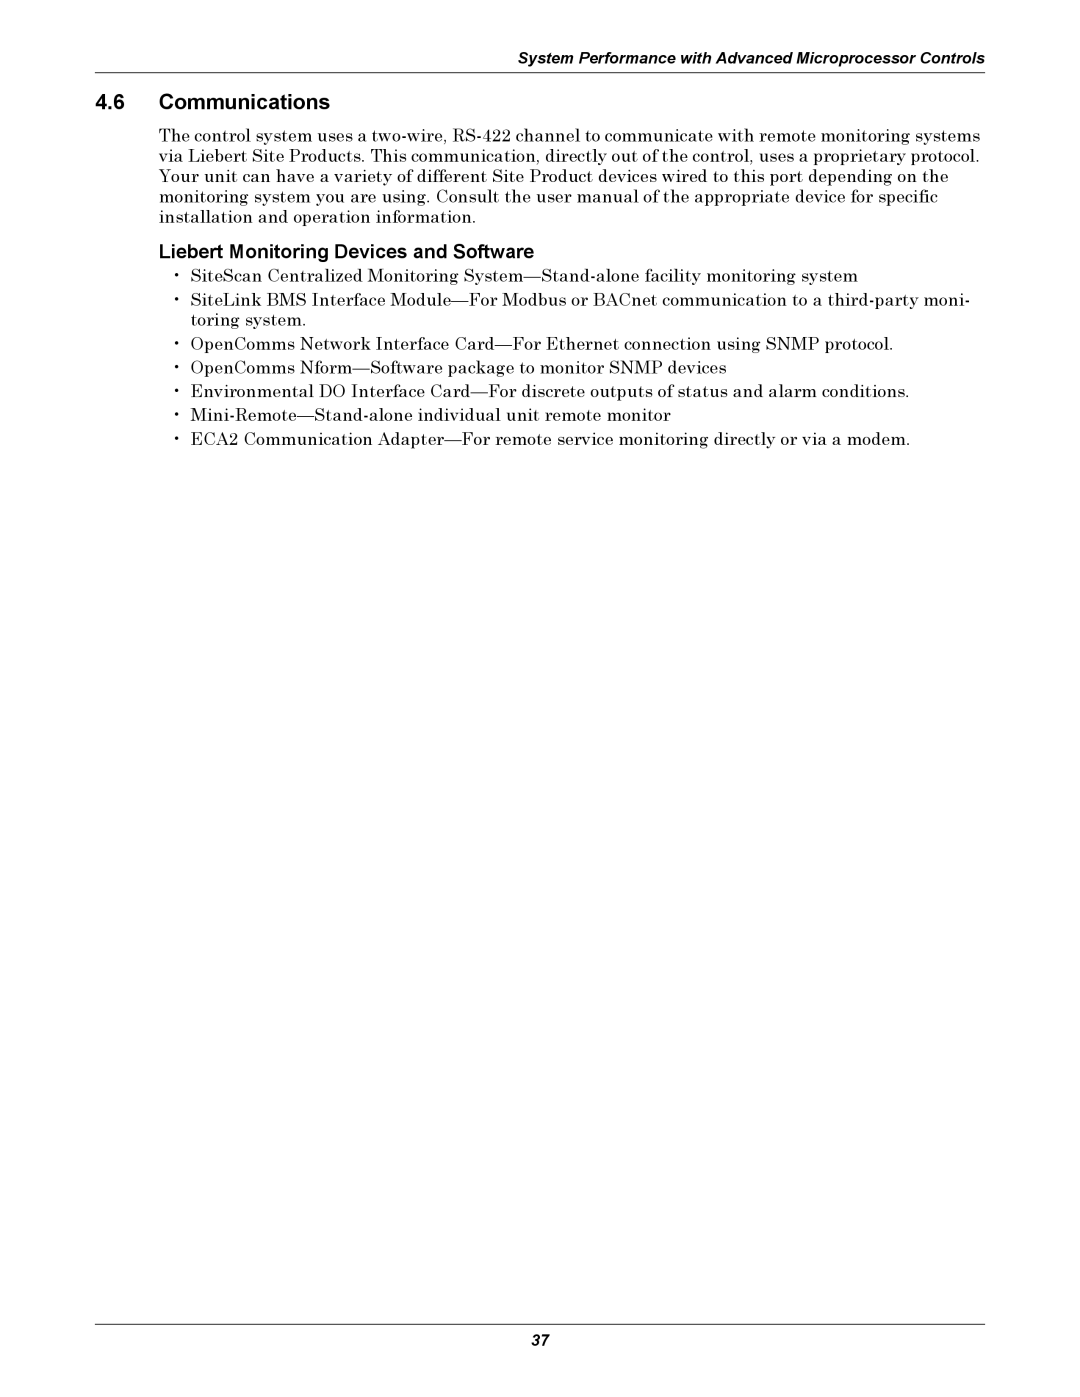 Liebert 3000 manual 4.6Communications, Liebert Monitoring Devices and Software 